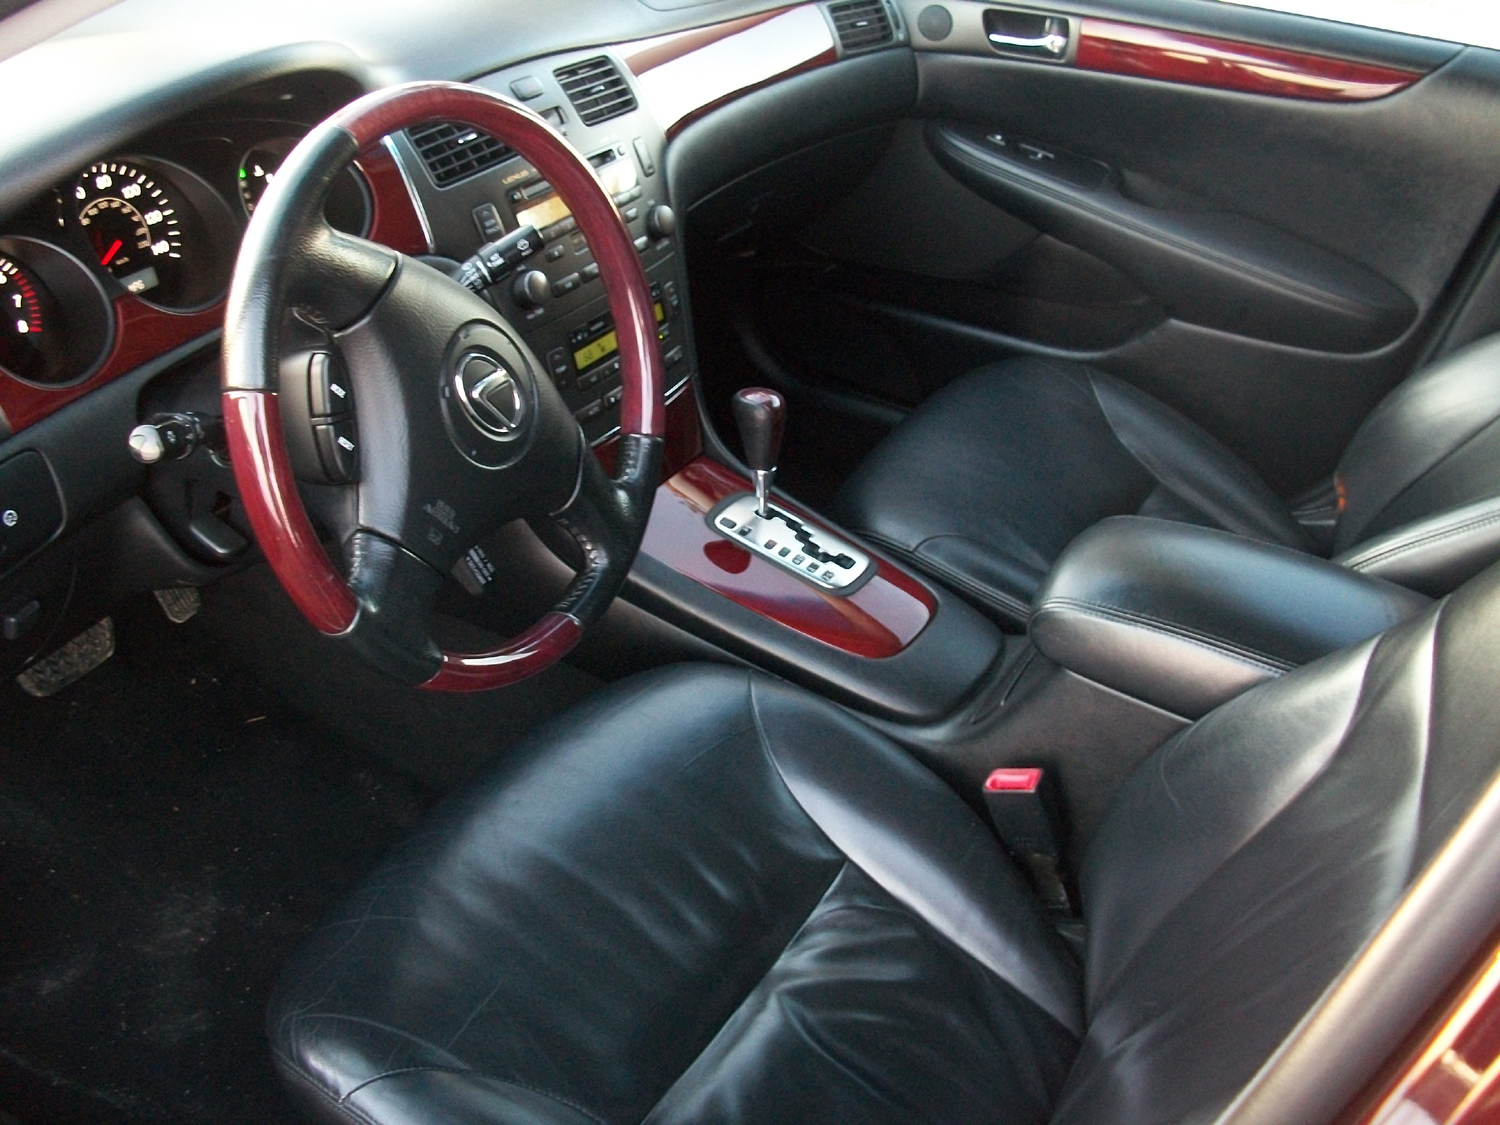 2002 lexus es300 interior colors